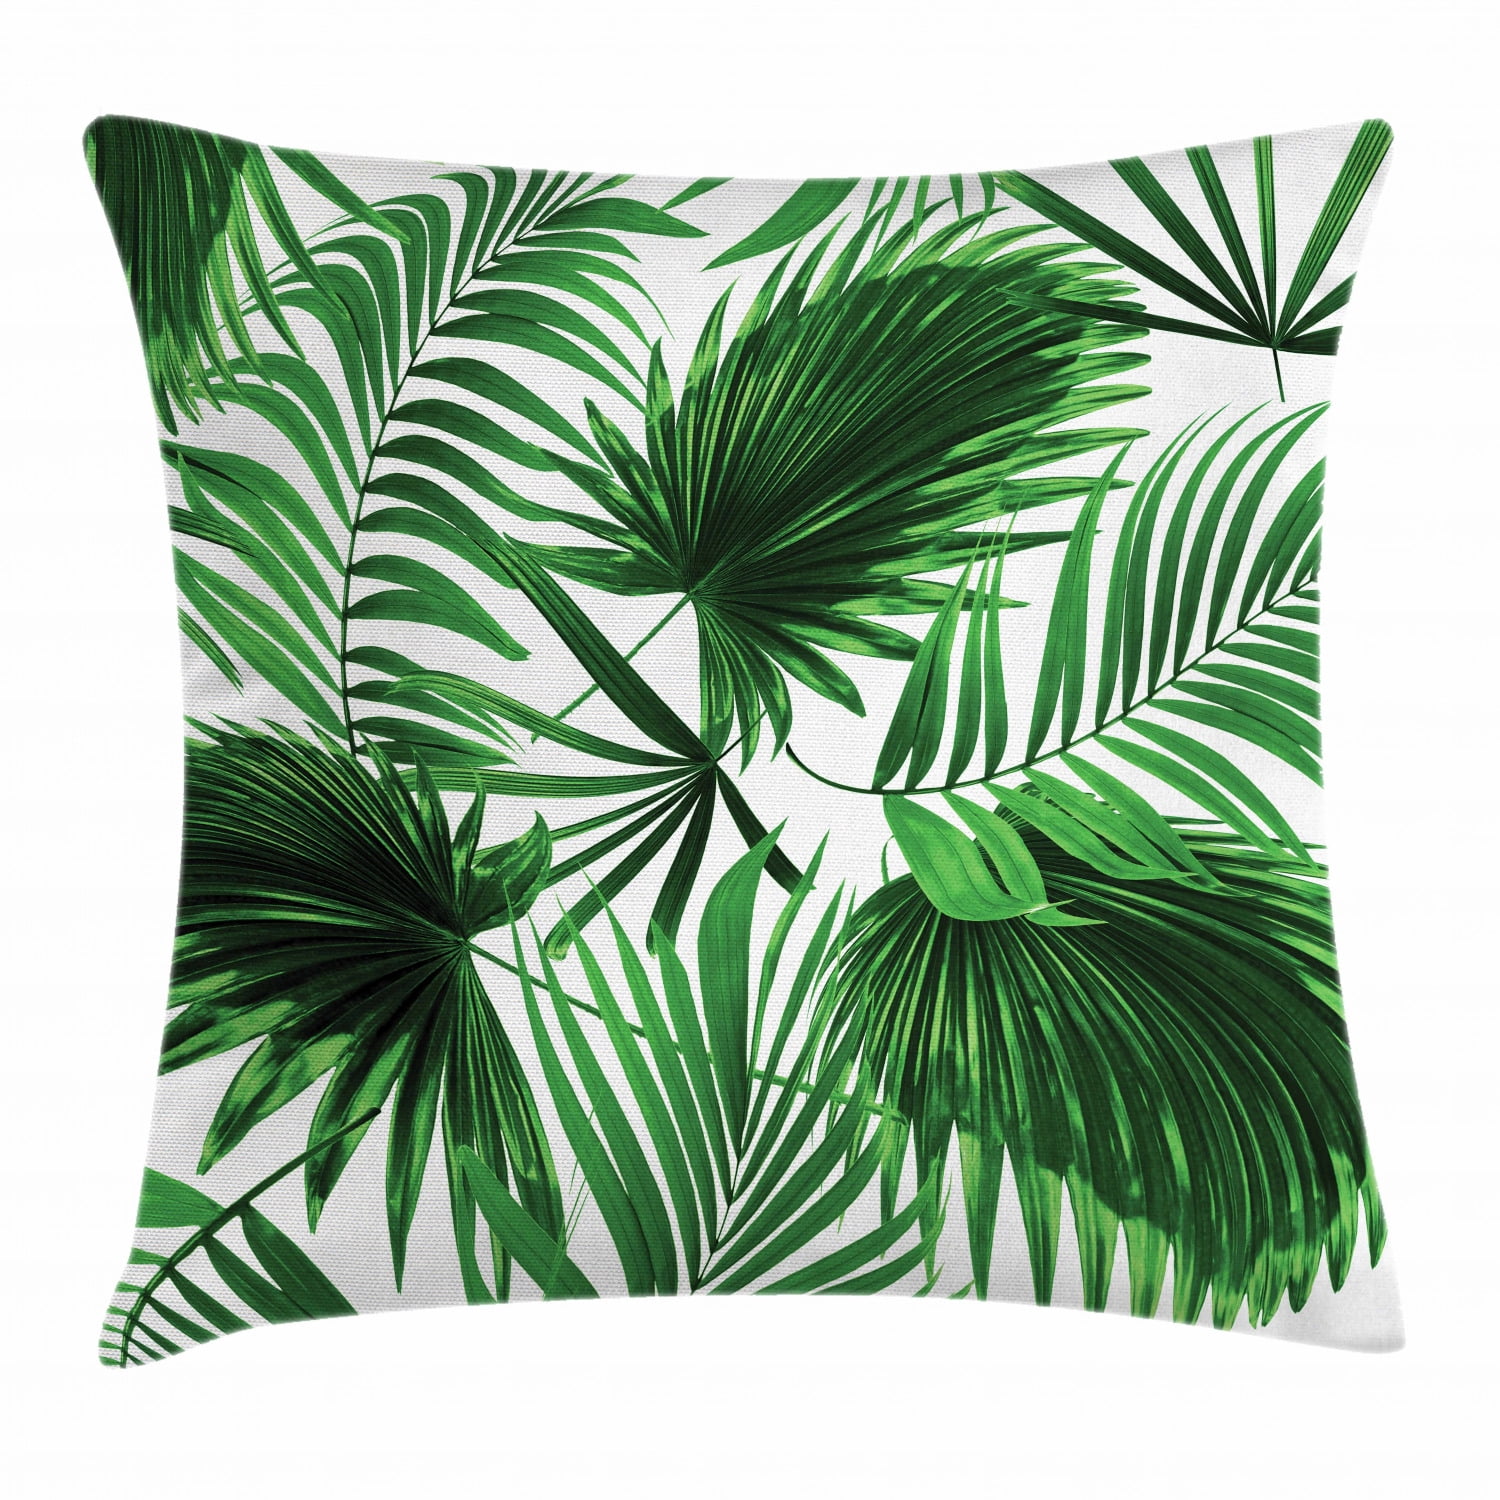 Gold Palm Leaf Throw Pillow Case Bed Sofa Waist Throw Cushion Cover Home Decor 